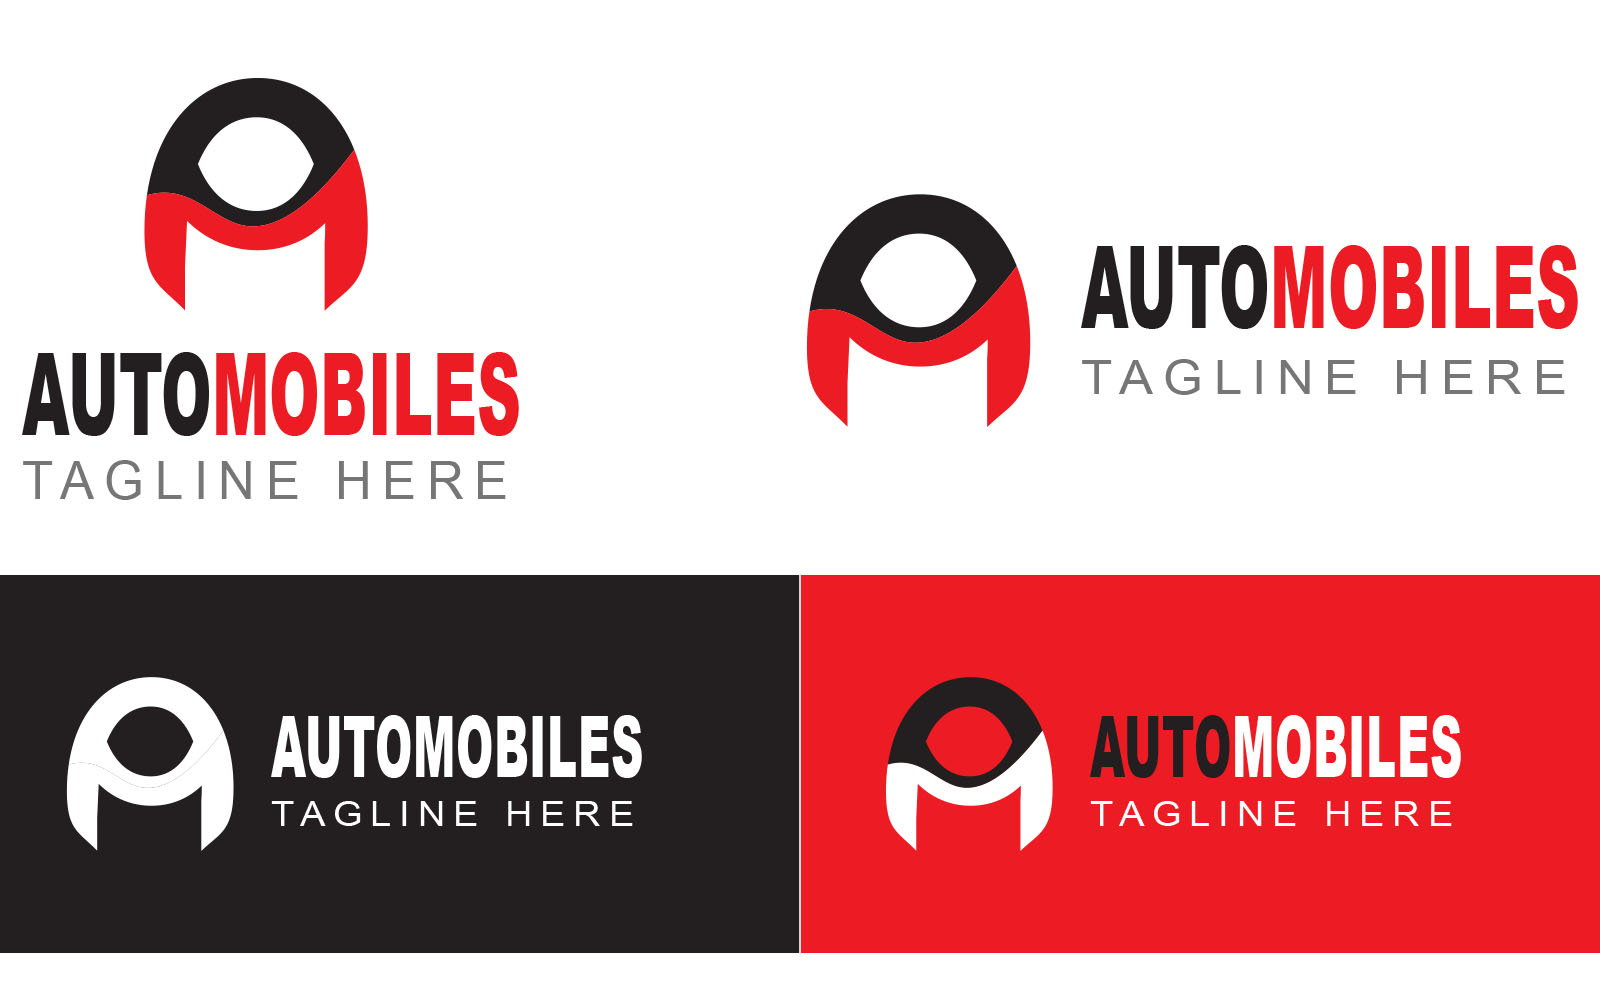 Kit Graphique #368702 Auto Automobile Divers Modles Web - Logo template Preview